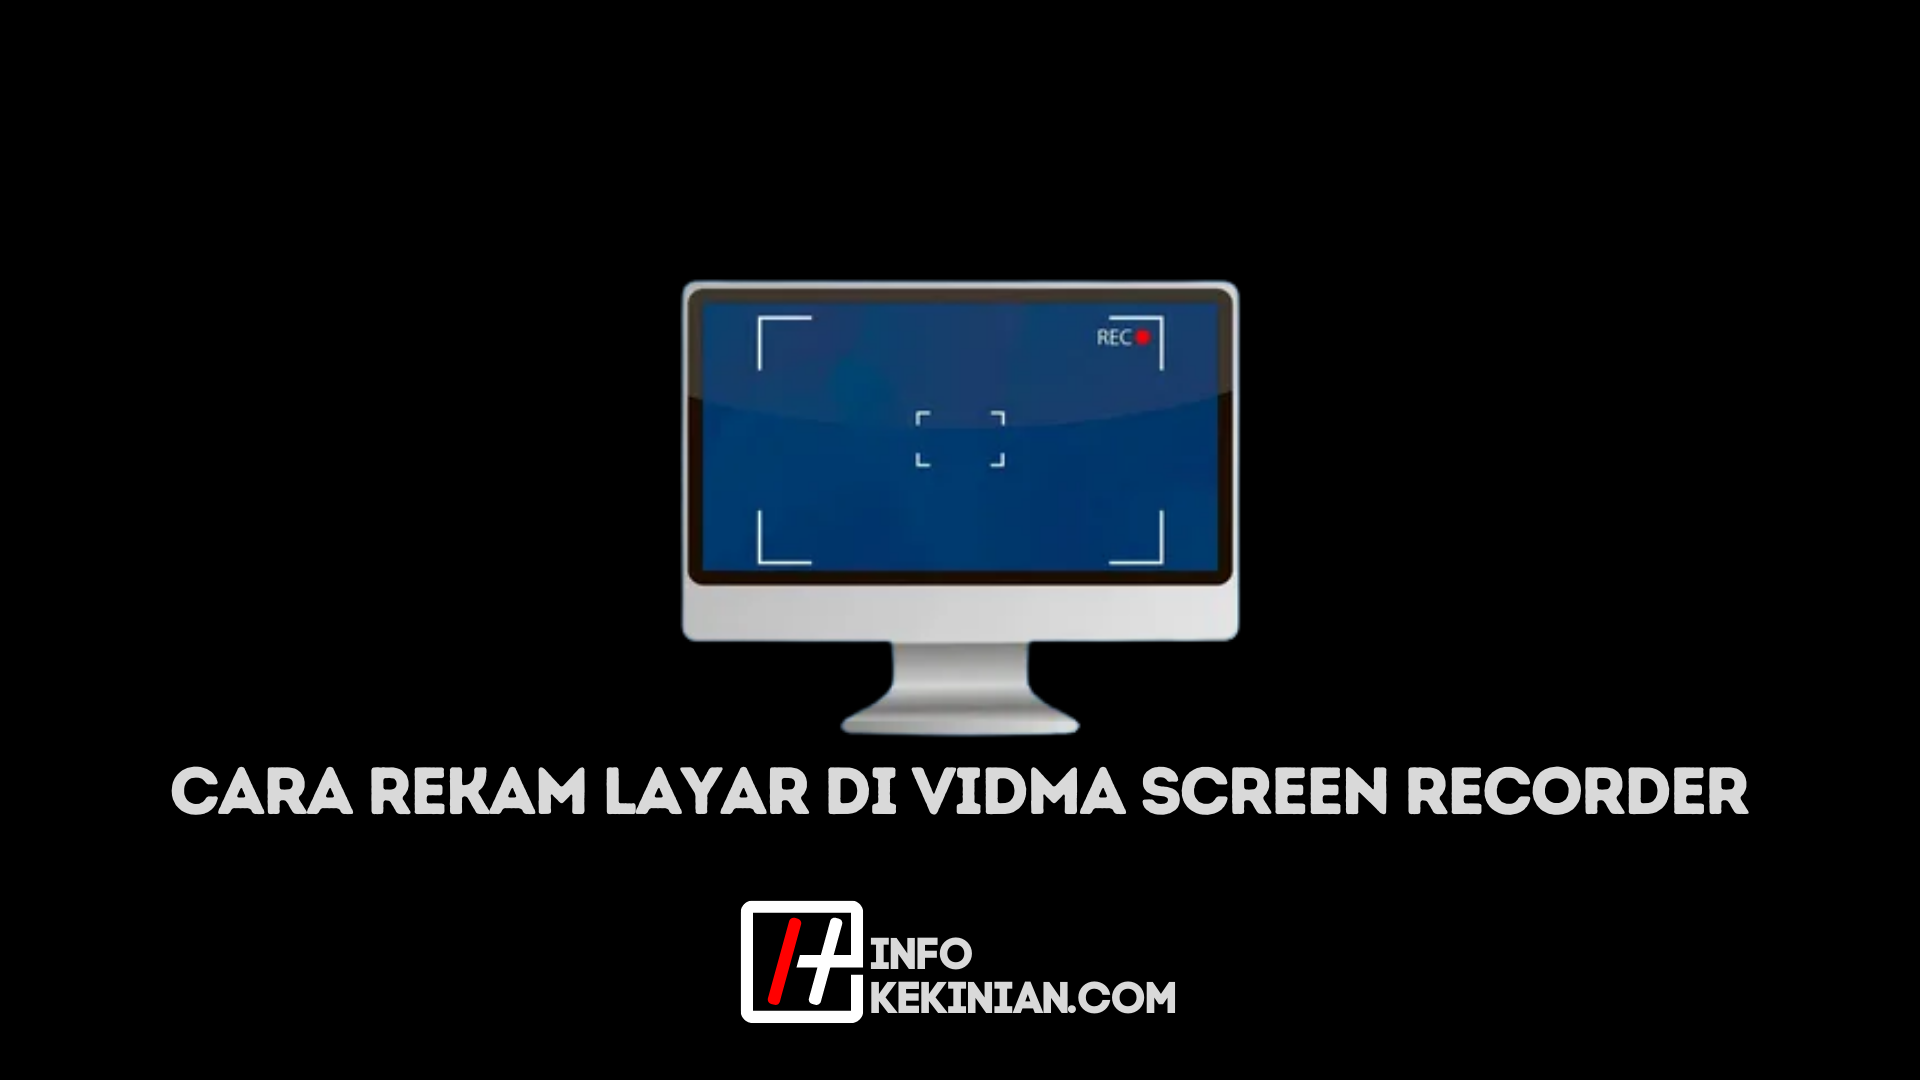 Fitur Vidma Screen Recorder